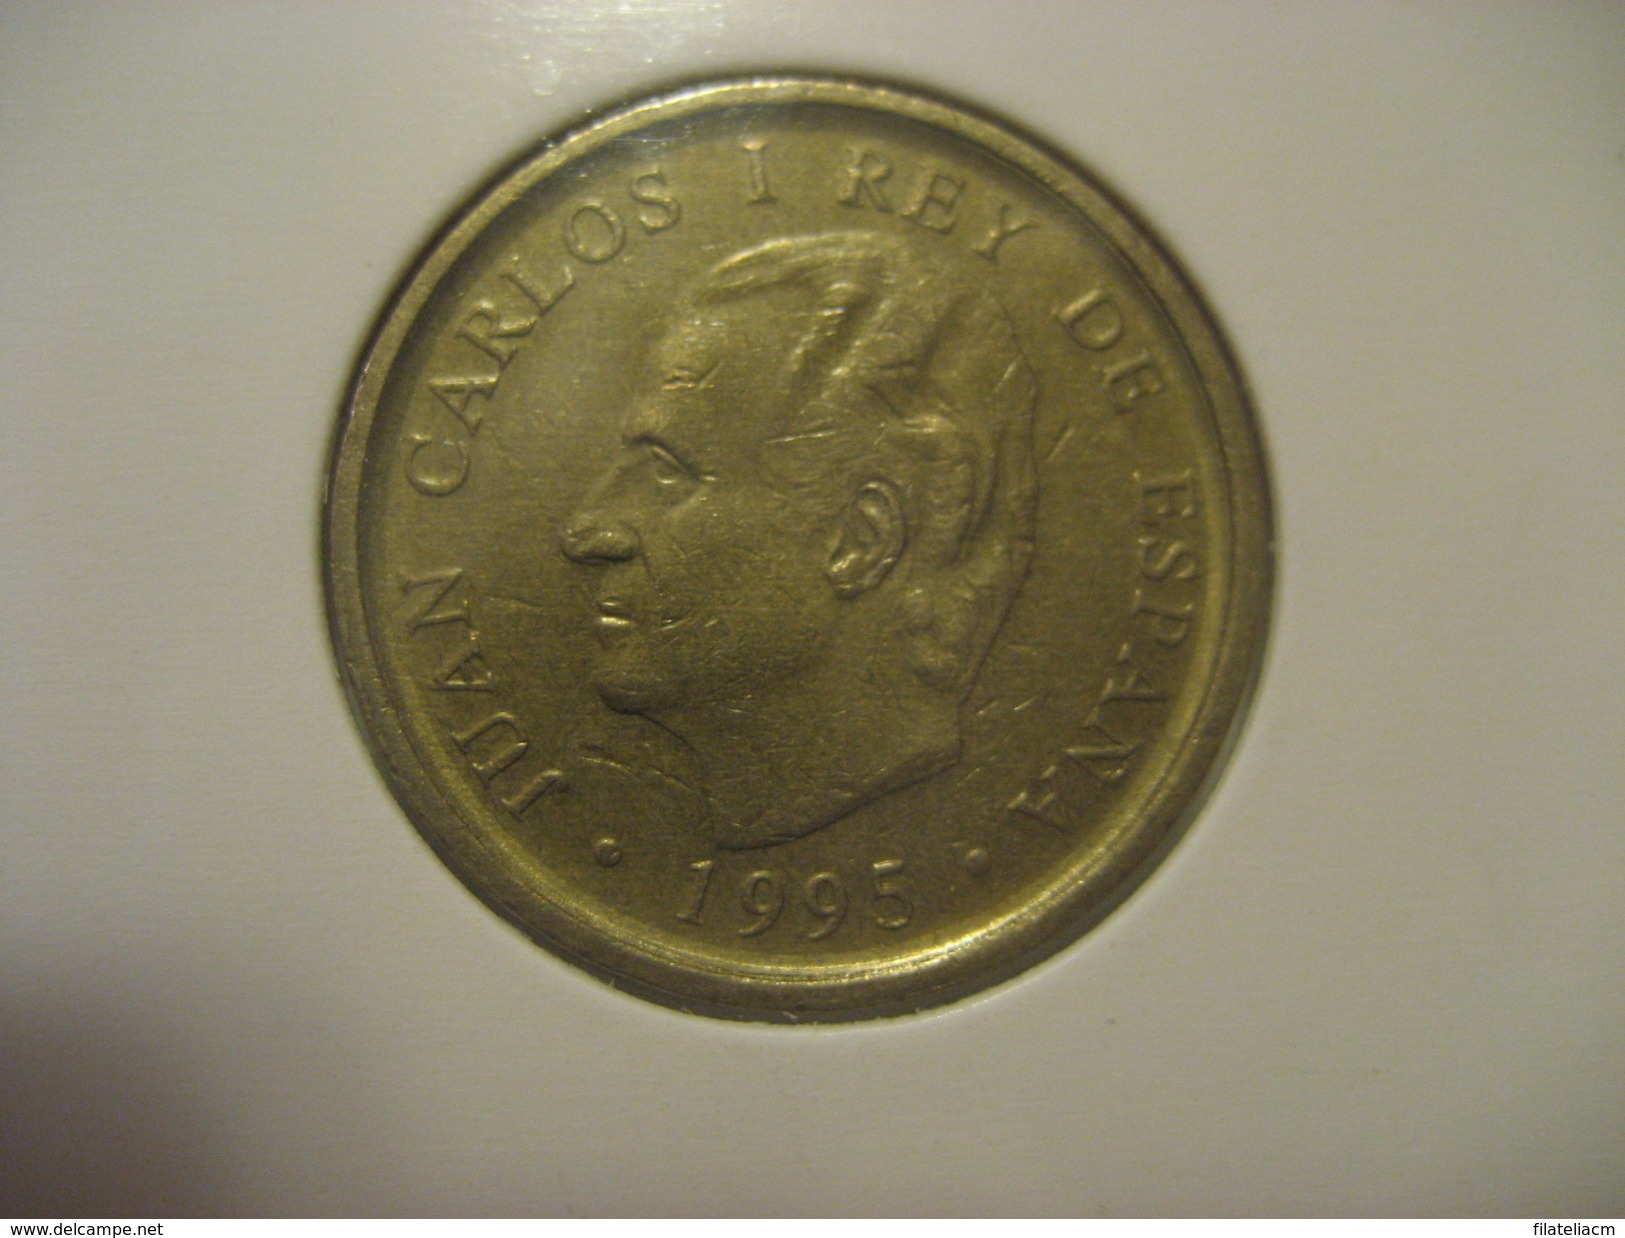 100 Pesetas 1995 SPAIN Juan Carlos I Coin - 100 Pesetas